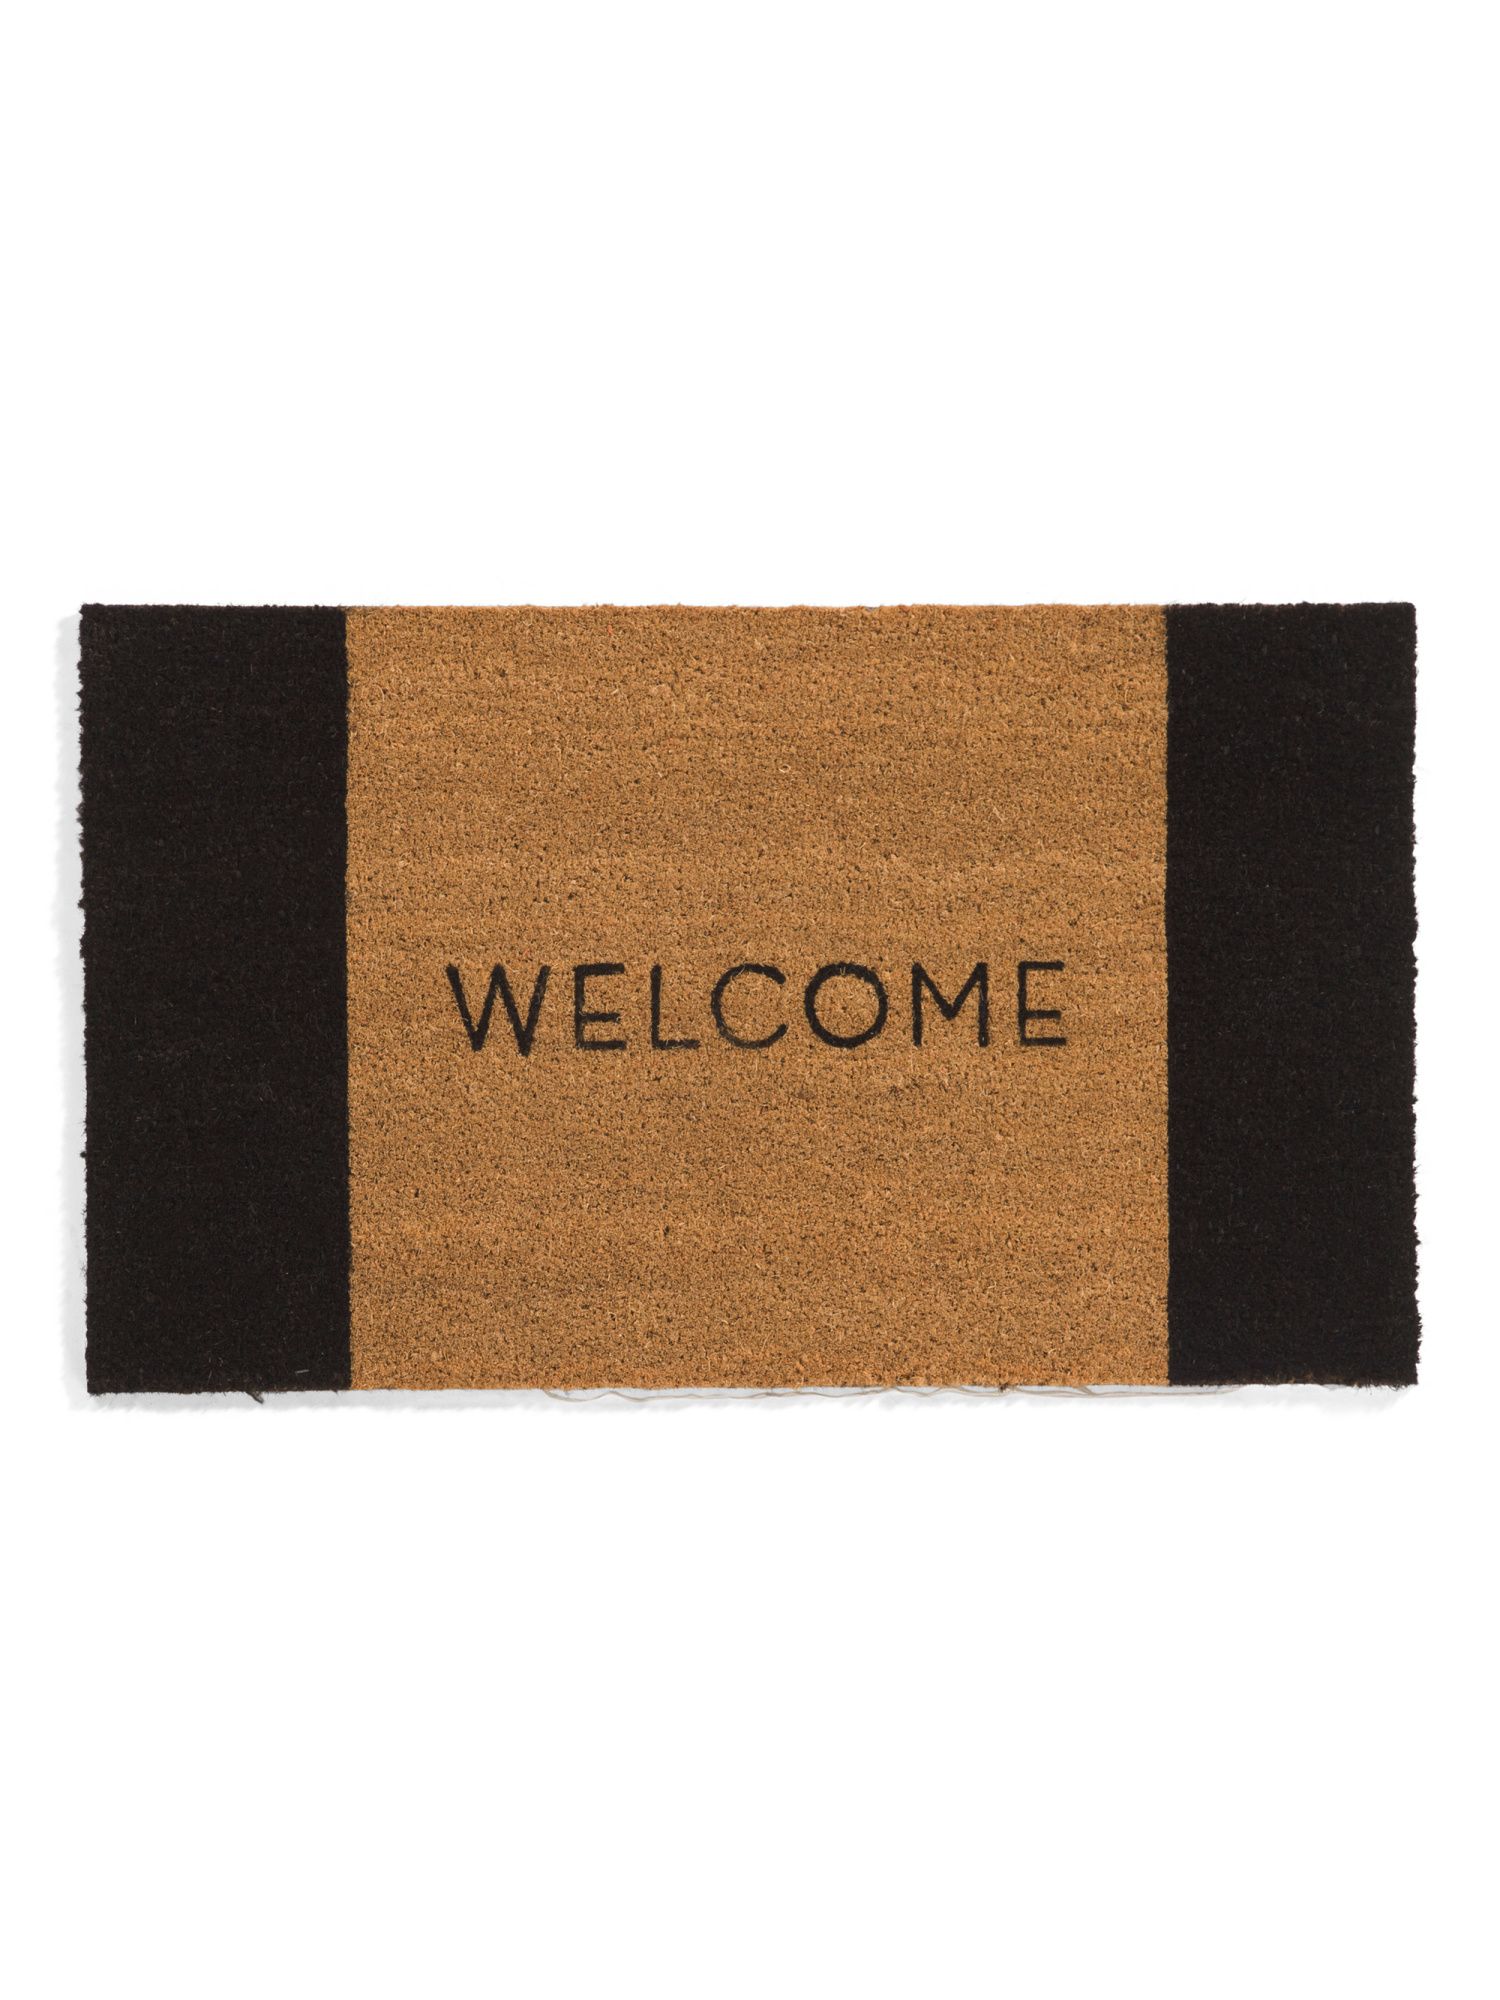 20x34 Welcome Doormat | TJ Maxx